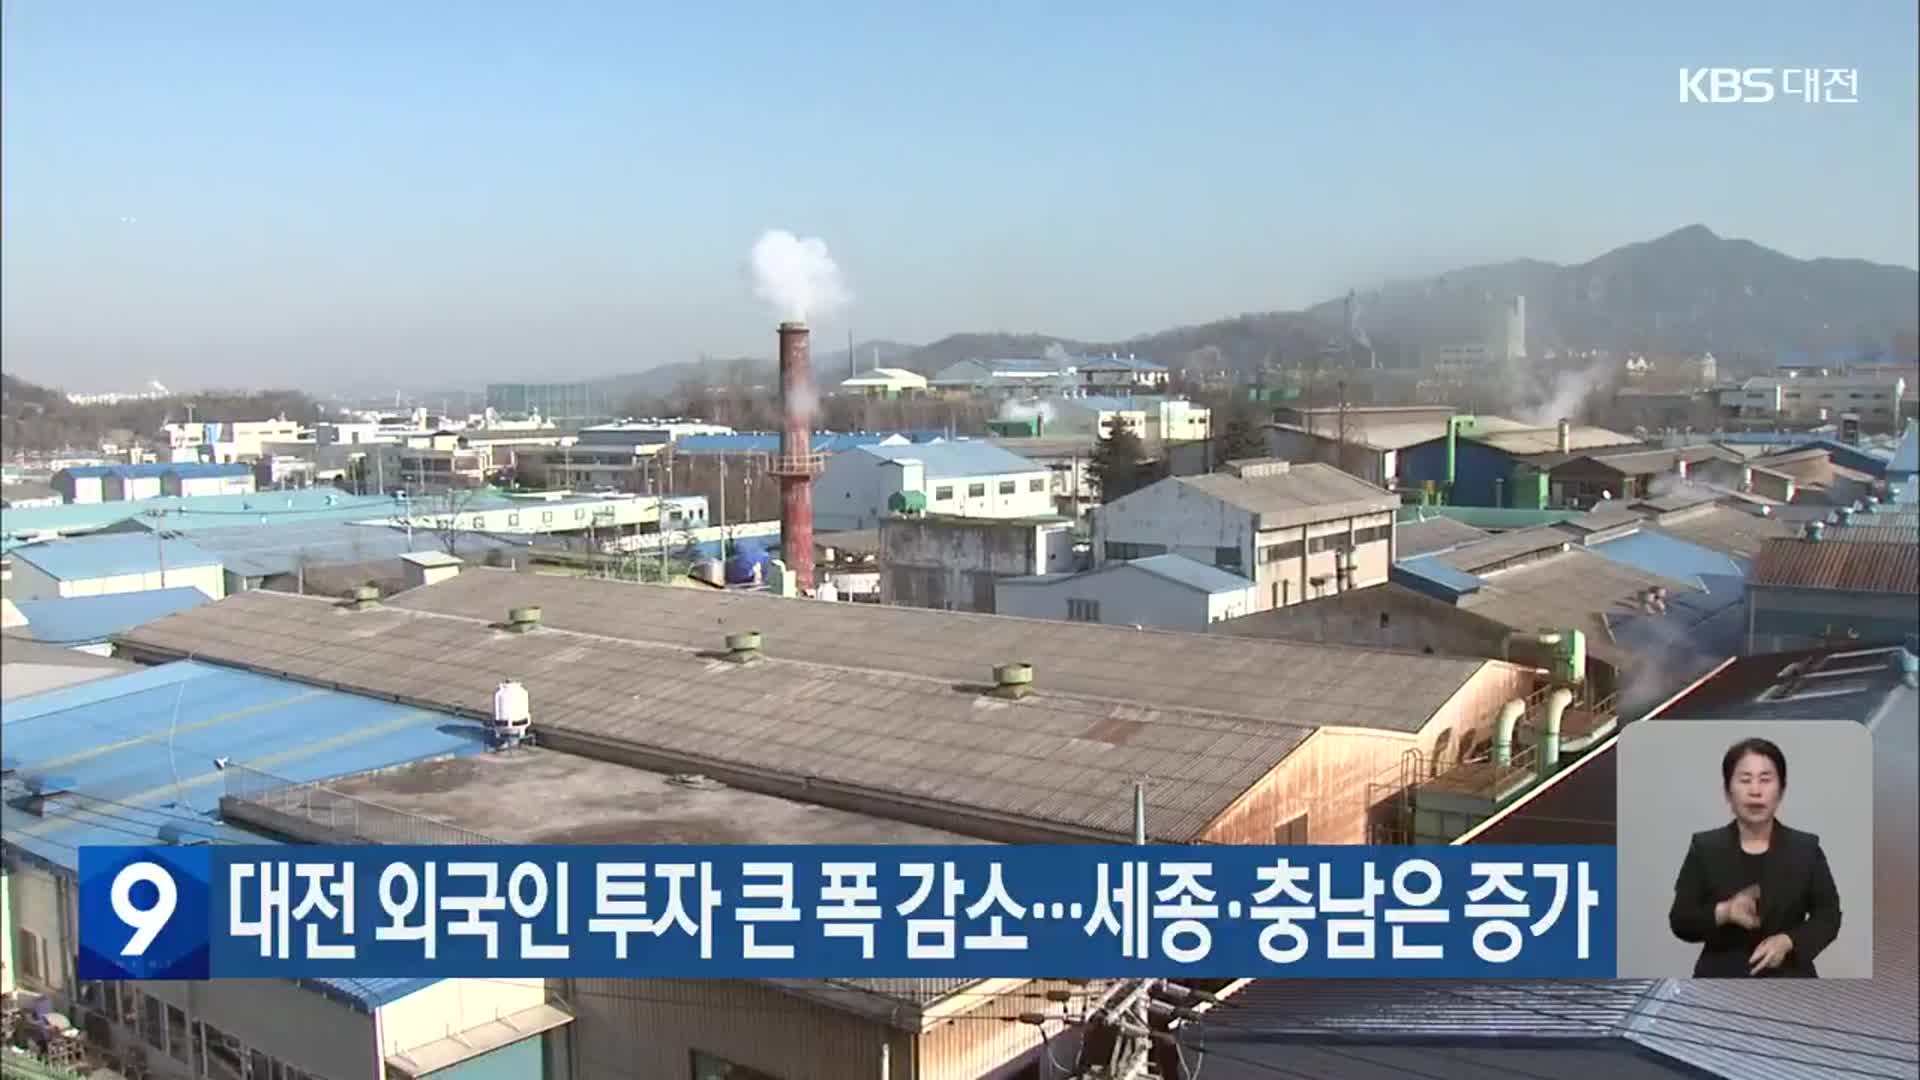 대전 외국인 투자 큰 폭 감소…세종·충남은 증가